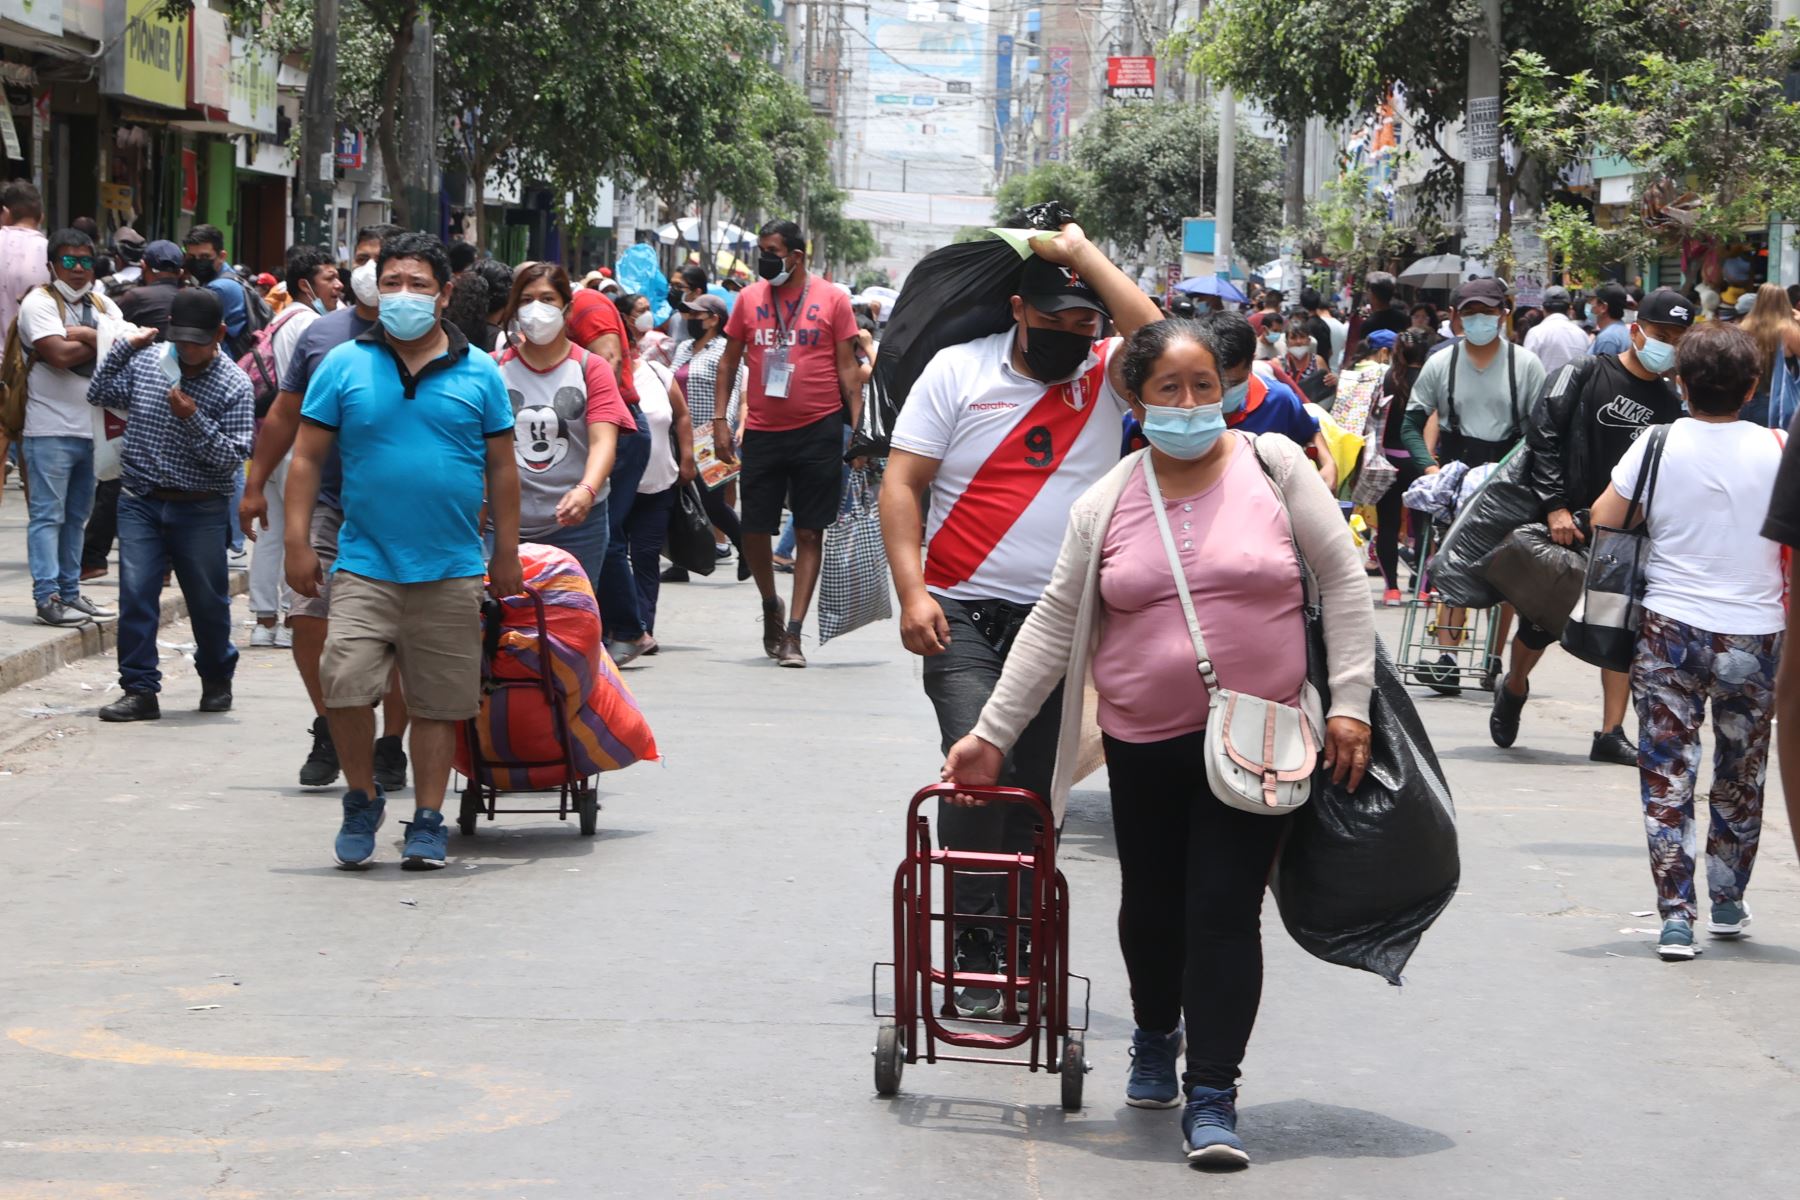 Negocios se vienen reactivando sostenidamente en Perú tras la pandemia